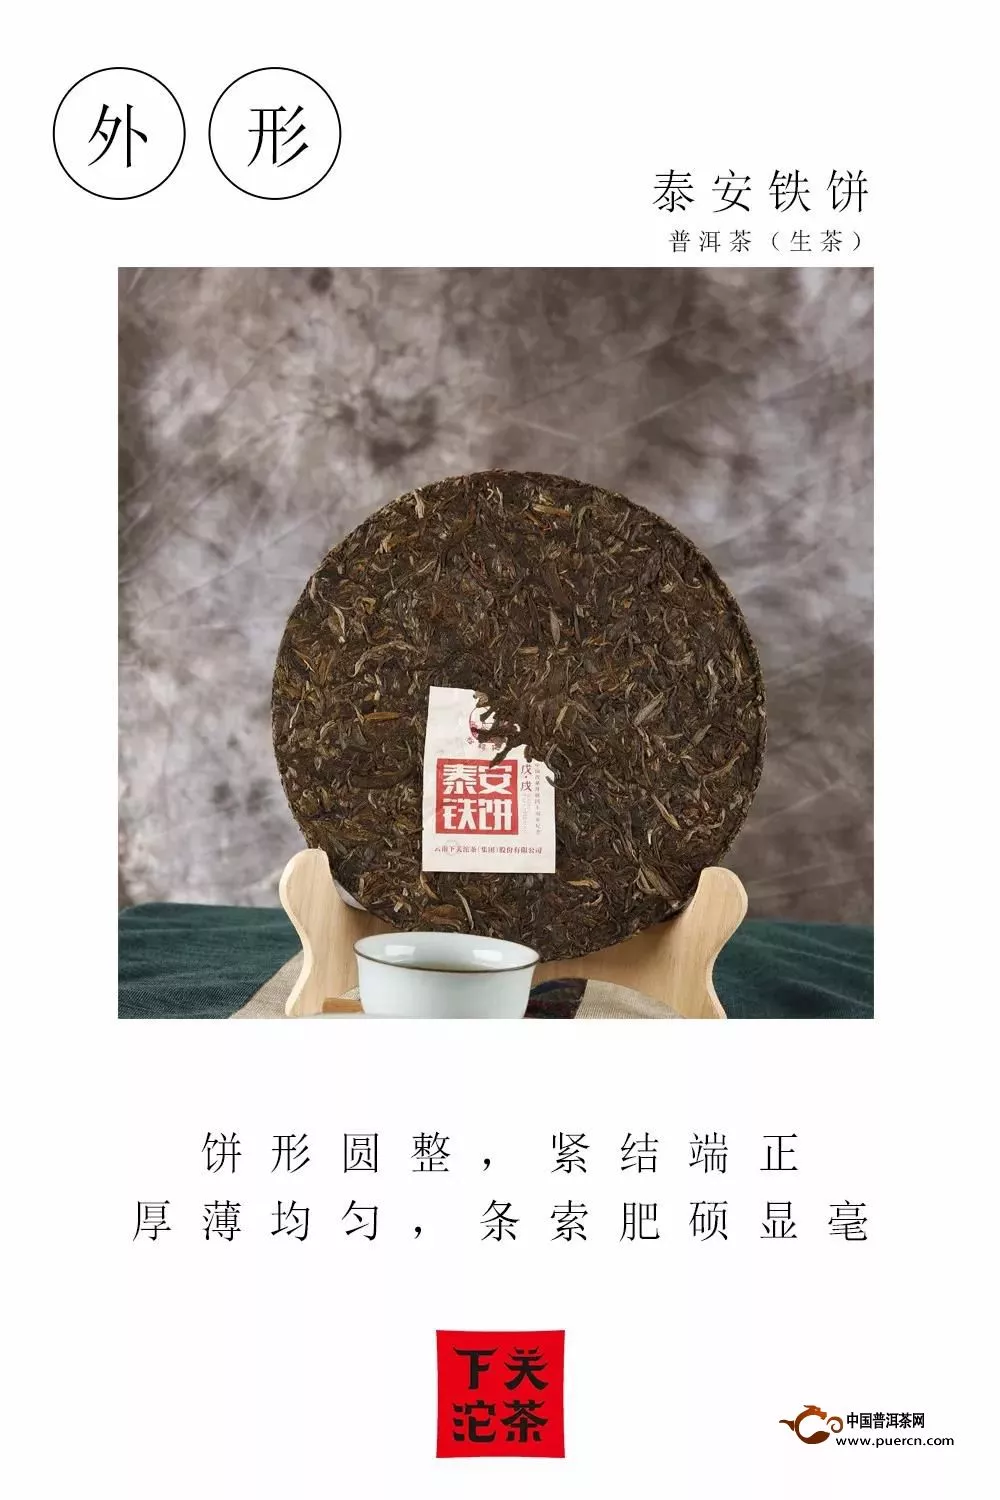 【品鉴】泰安铁饼——泰安一瓷，沁润清幽